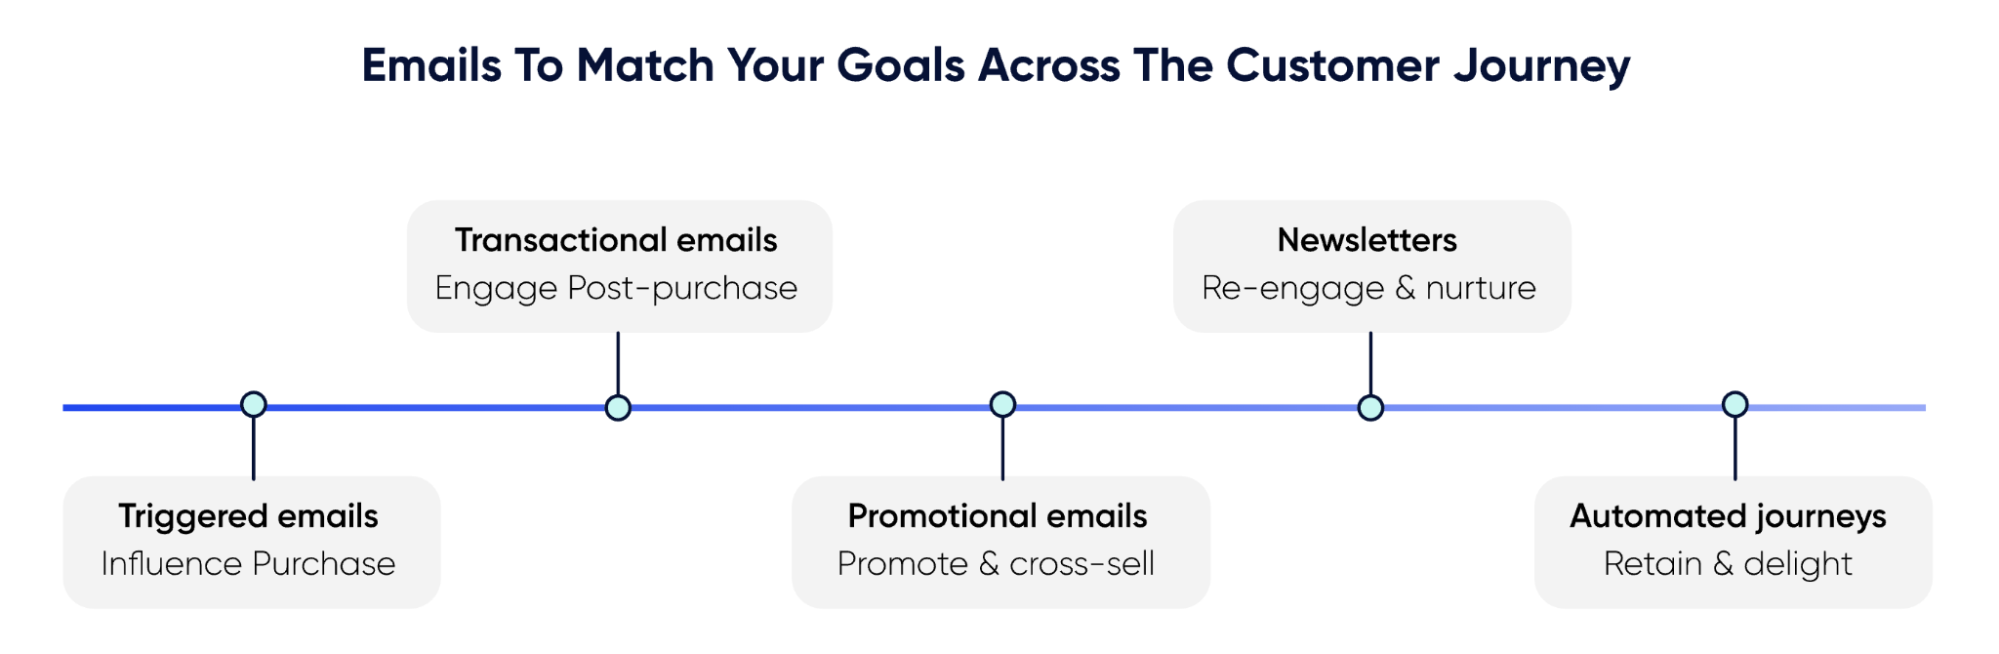 Etapas del ciclo de vida del cliente que se pueden utilizar para el marketing por correo electrónico.